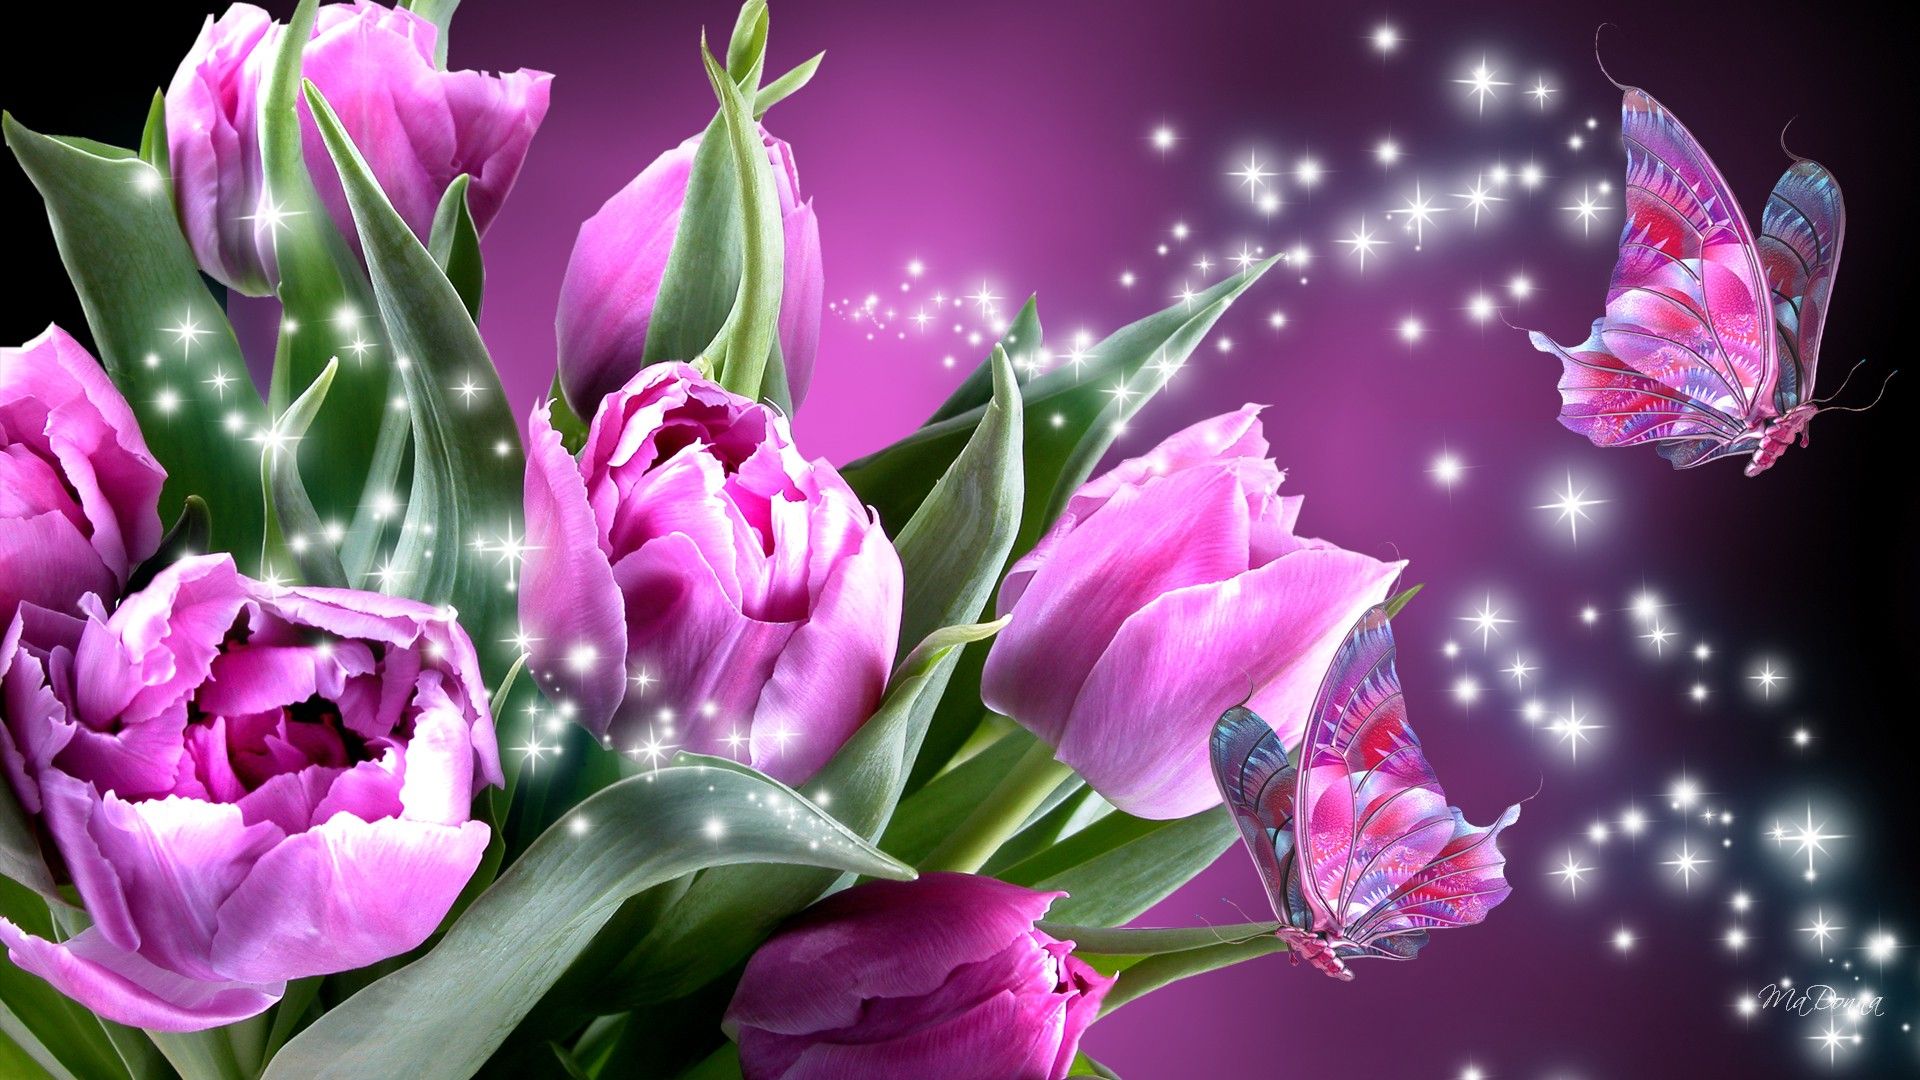 Free download wallpaper Flowers, Flower, Earth, Butterfly, Tulip, Purple Flower, Sparkles on your PC desktop